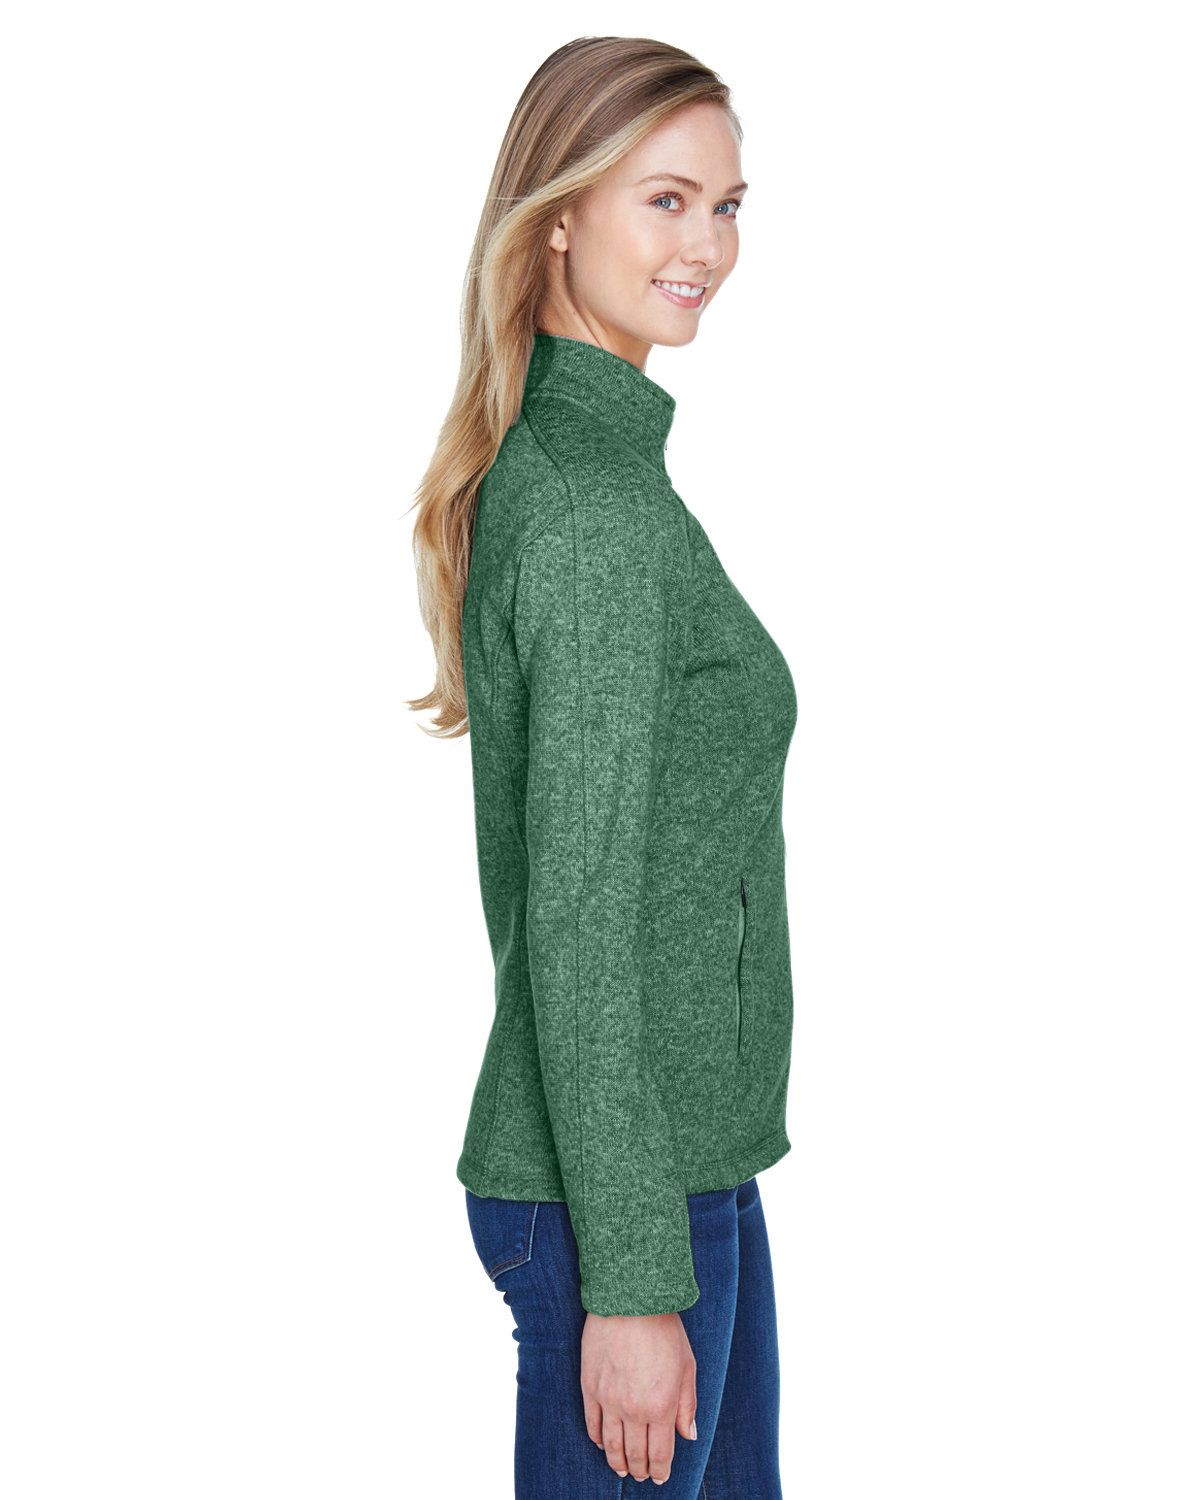 'Devon & Jones DG793W Ladies Bristol Full-Zip Sweater Fleece Jacket'